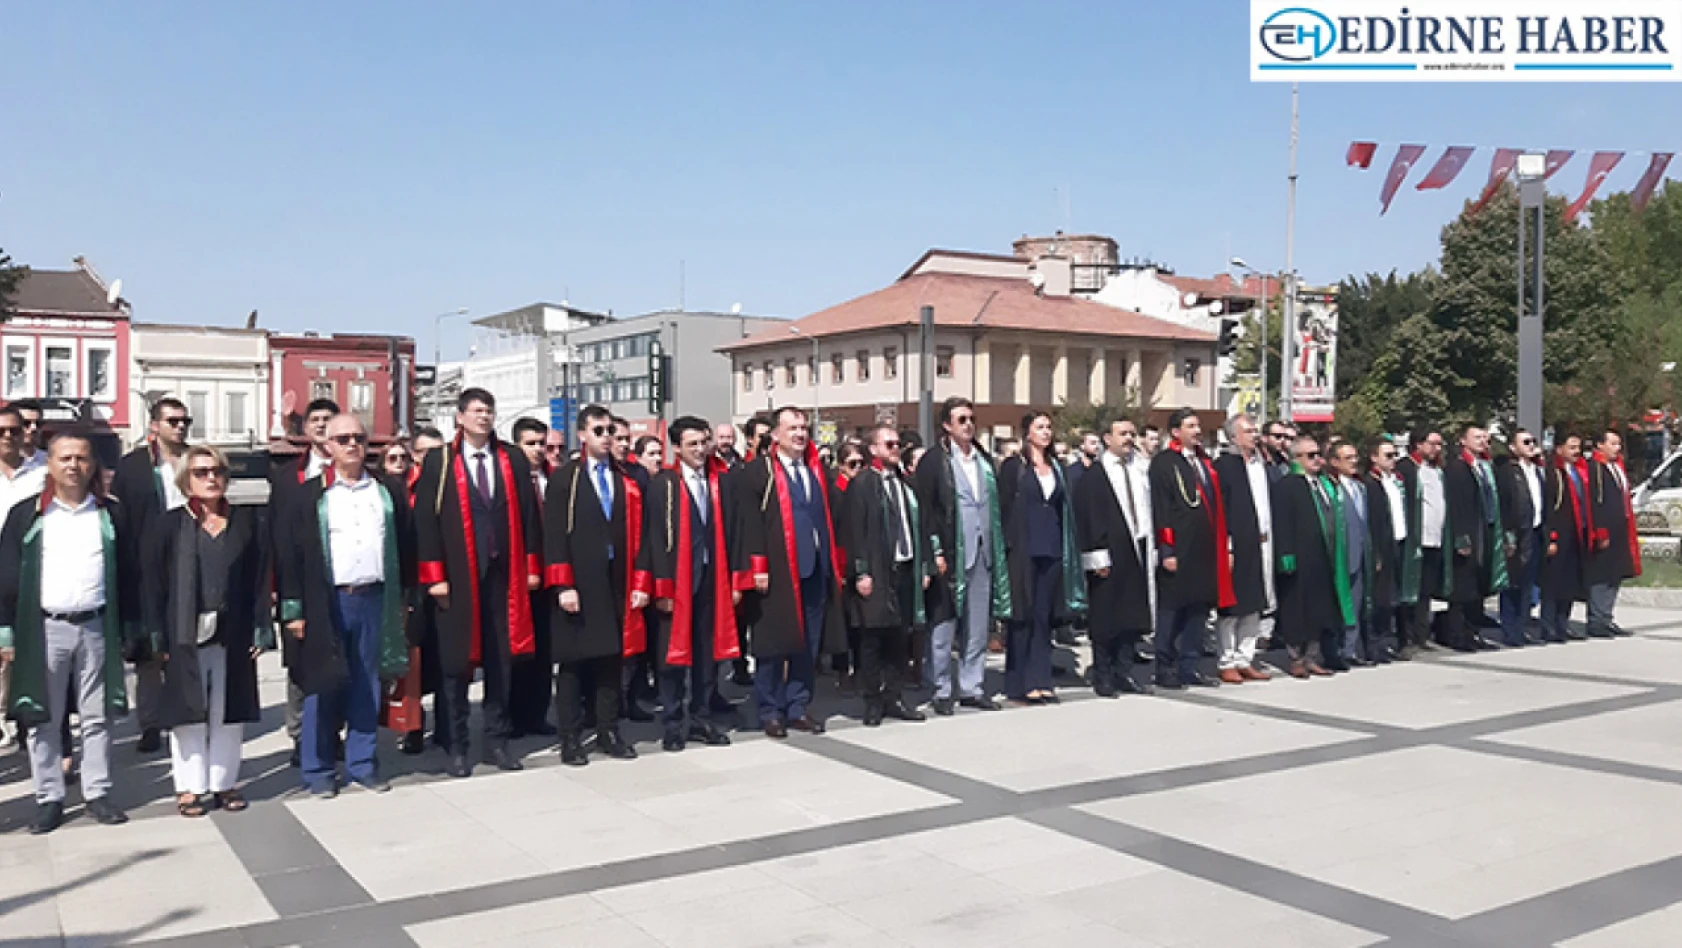 Edirne'de 2023-2024 Adli Yıl açılışı nedeniyle tören düzenlendi